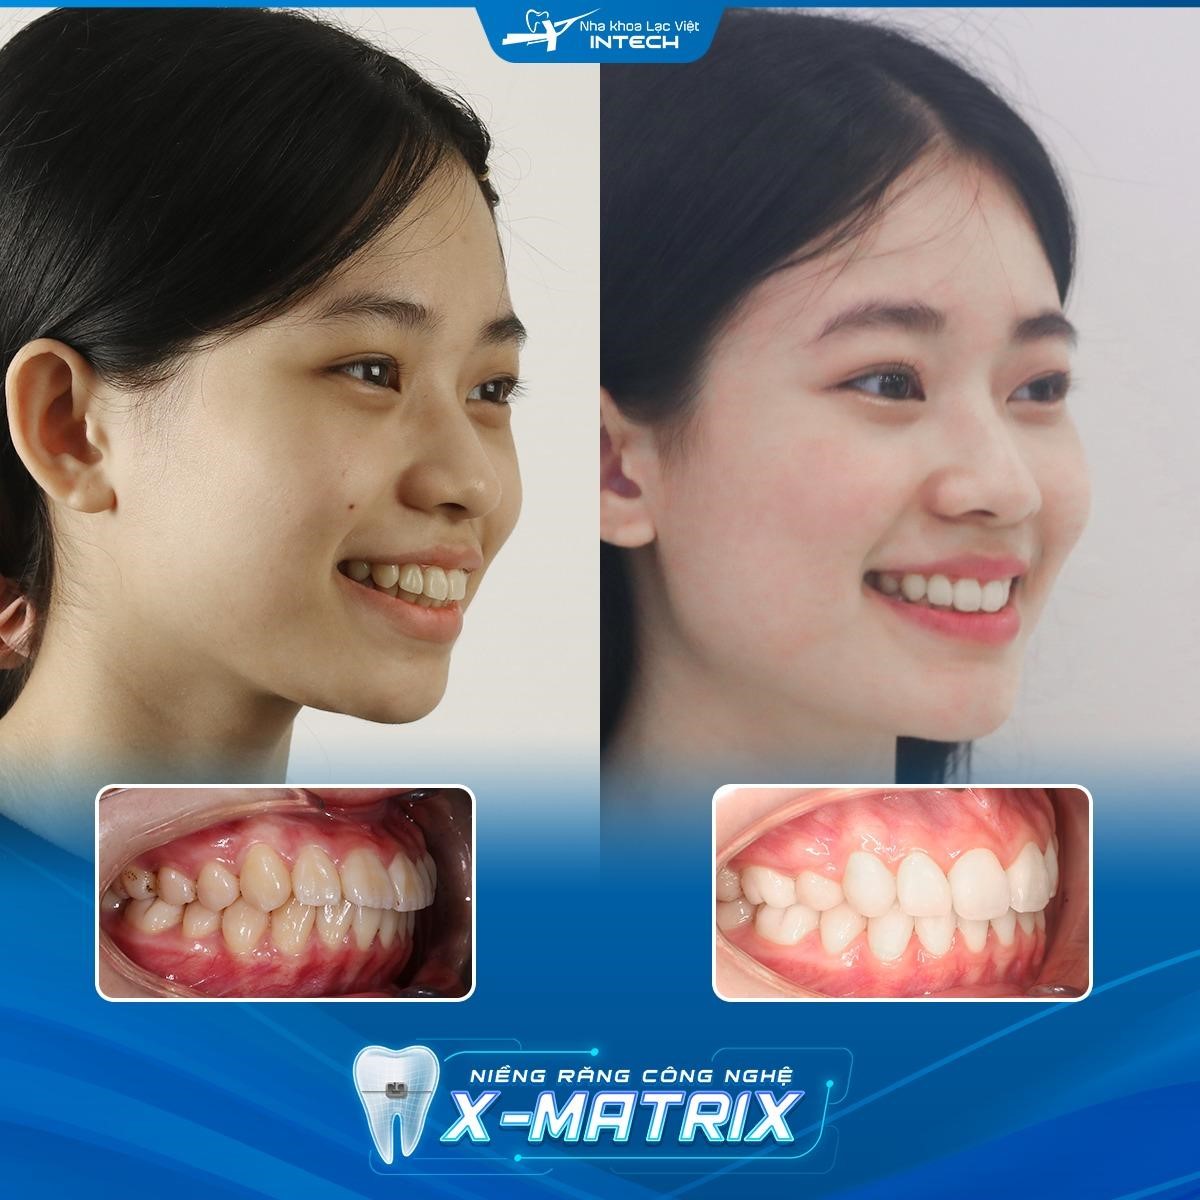 Các chiến lược mới trong việc giảm thiểu biến chứng niềng răng - Ảnh 3.